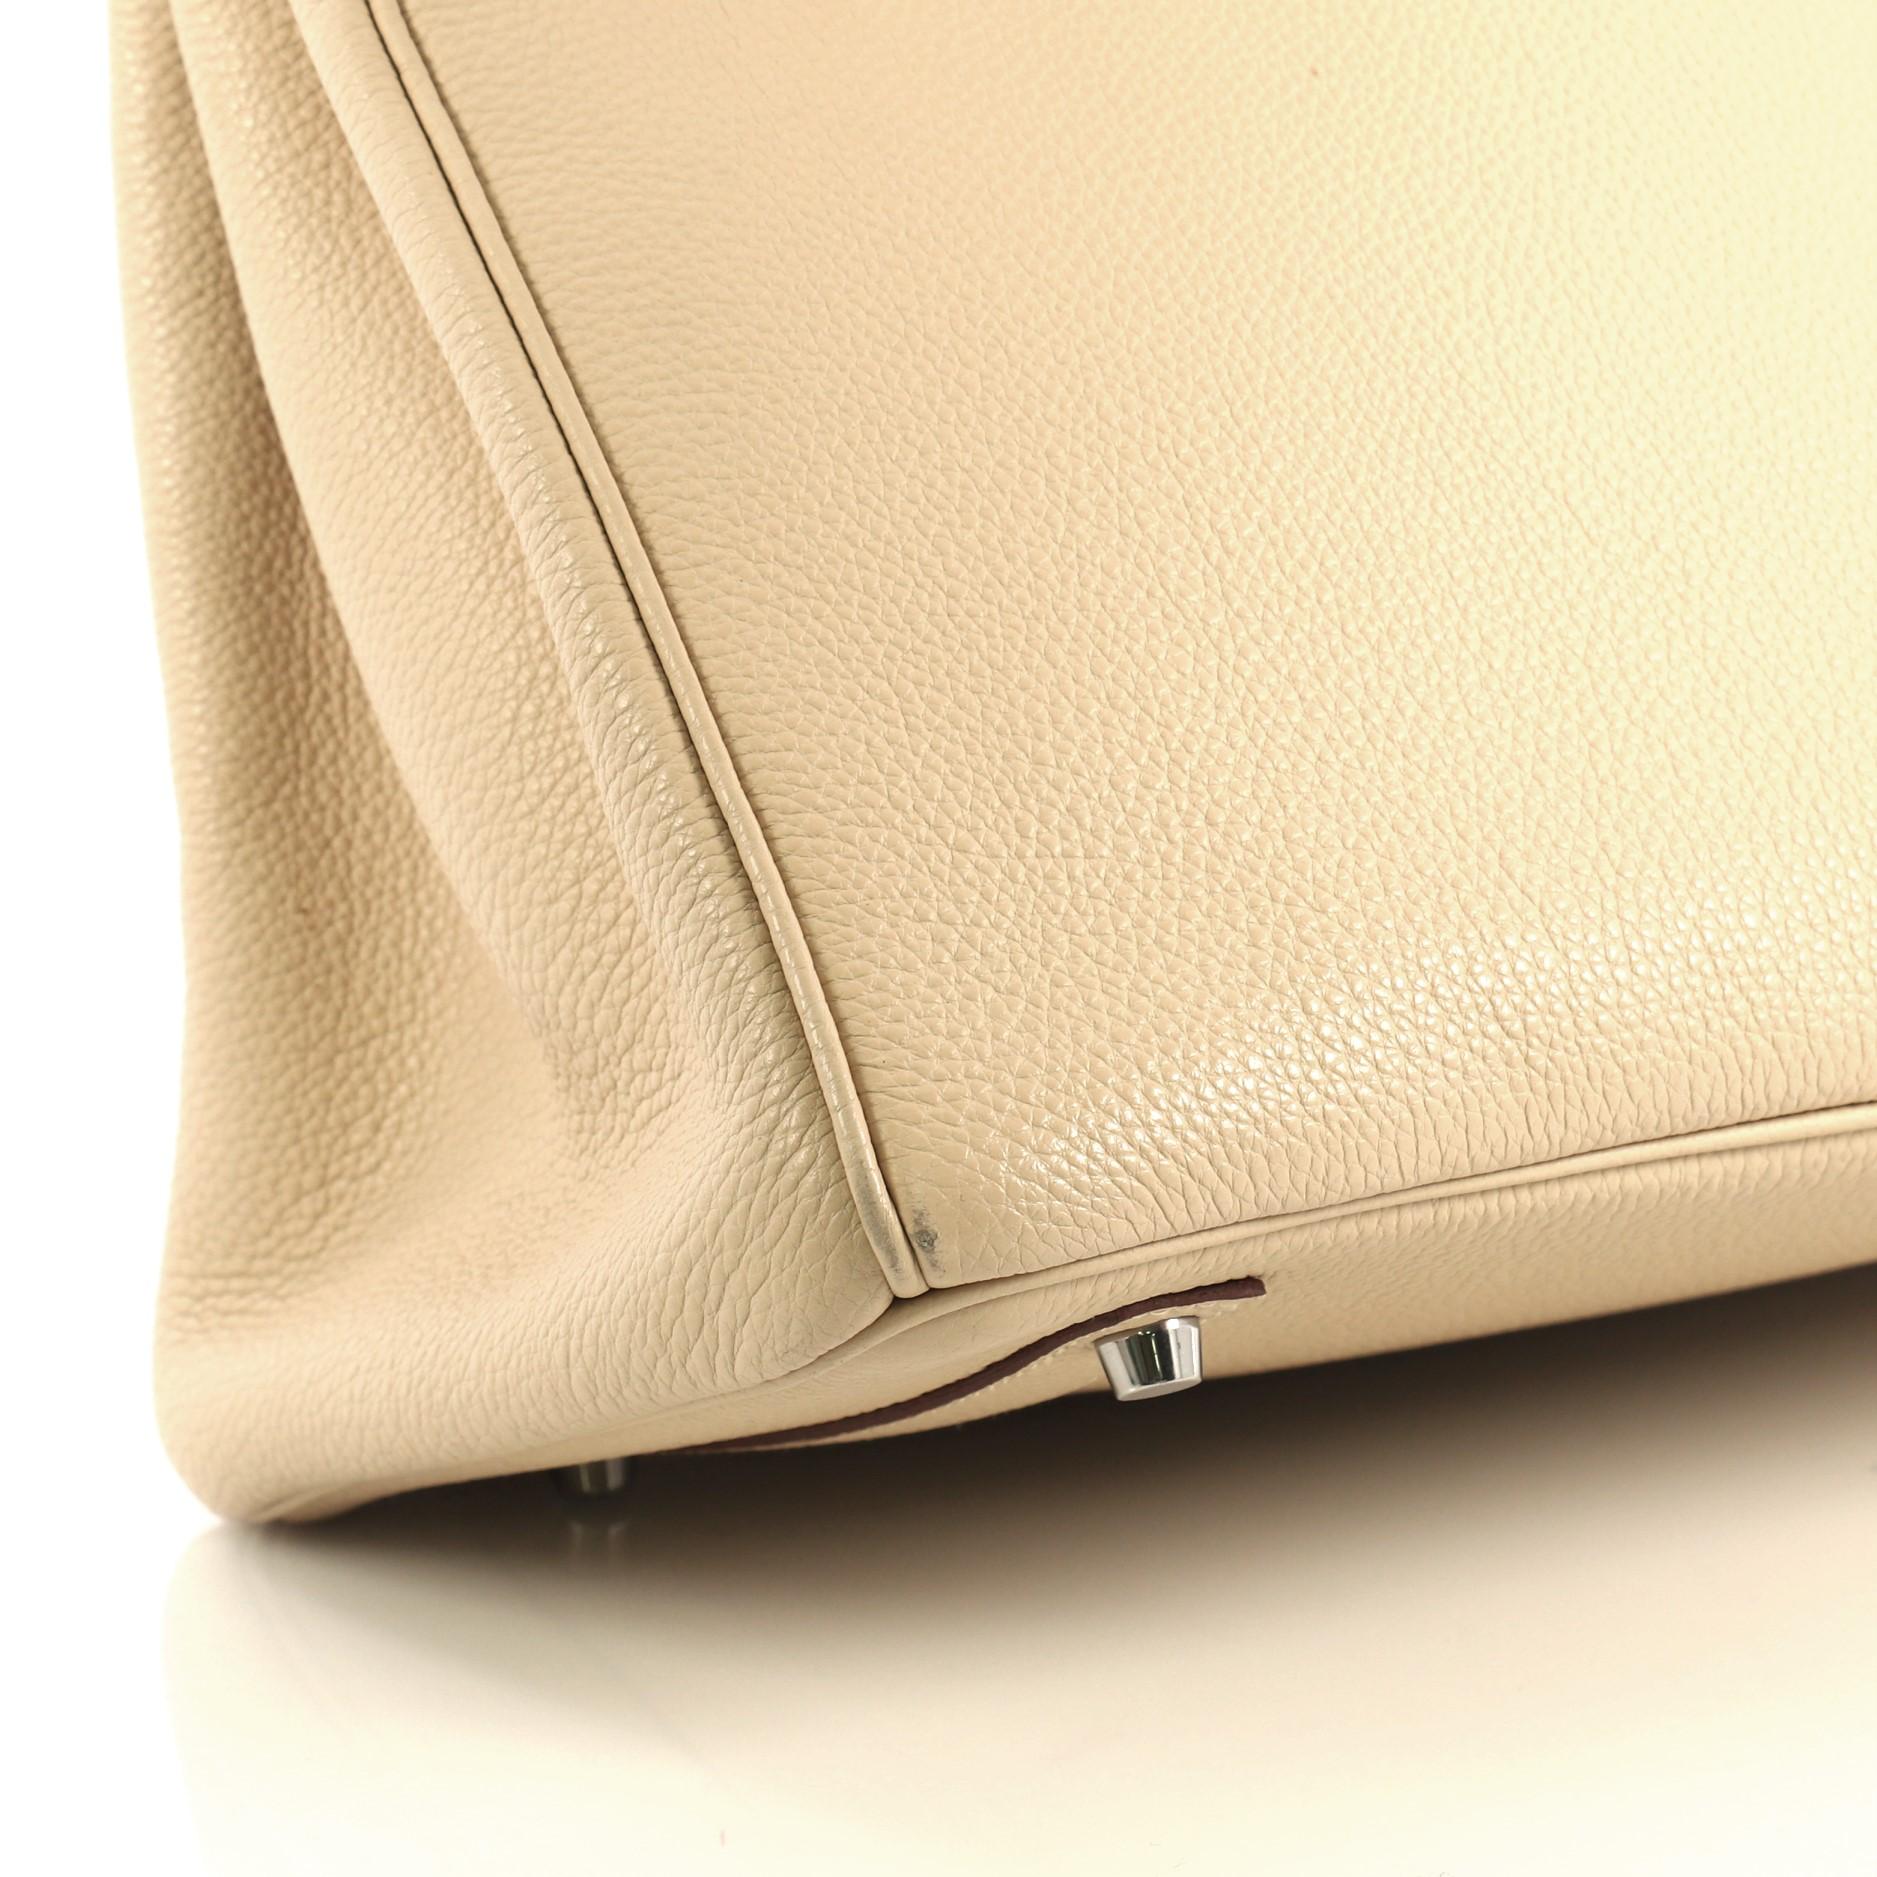 Hermes Birkin Handbag Parchemin Togo with Palladium Hardware 35 4